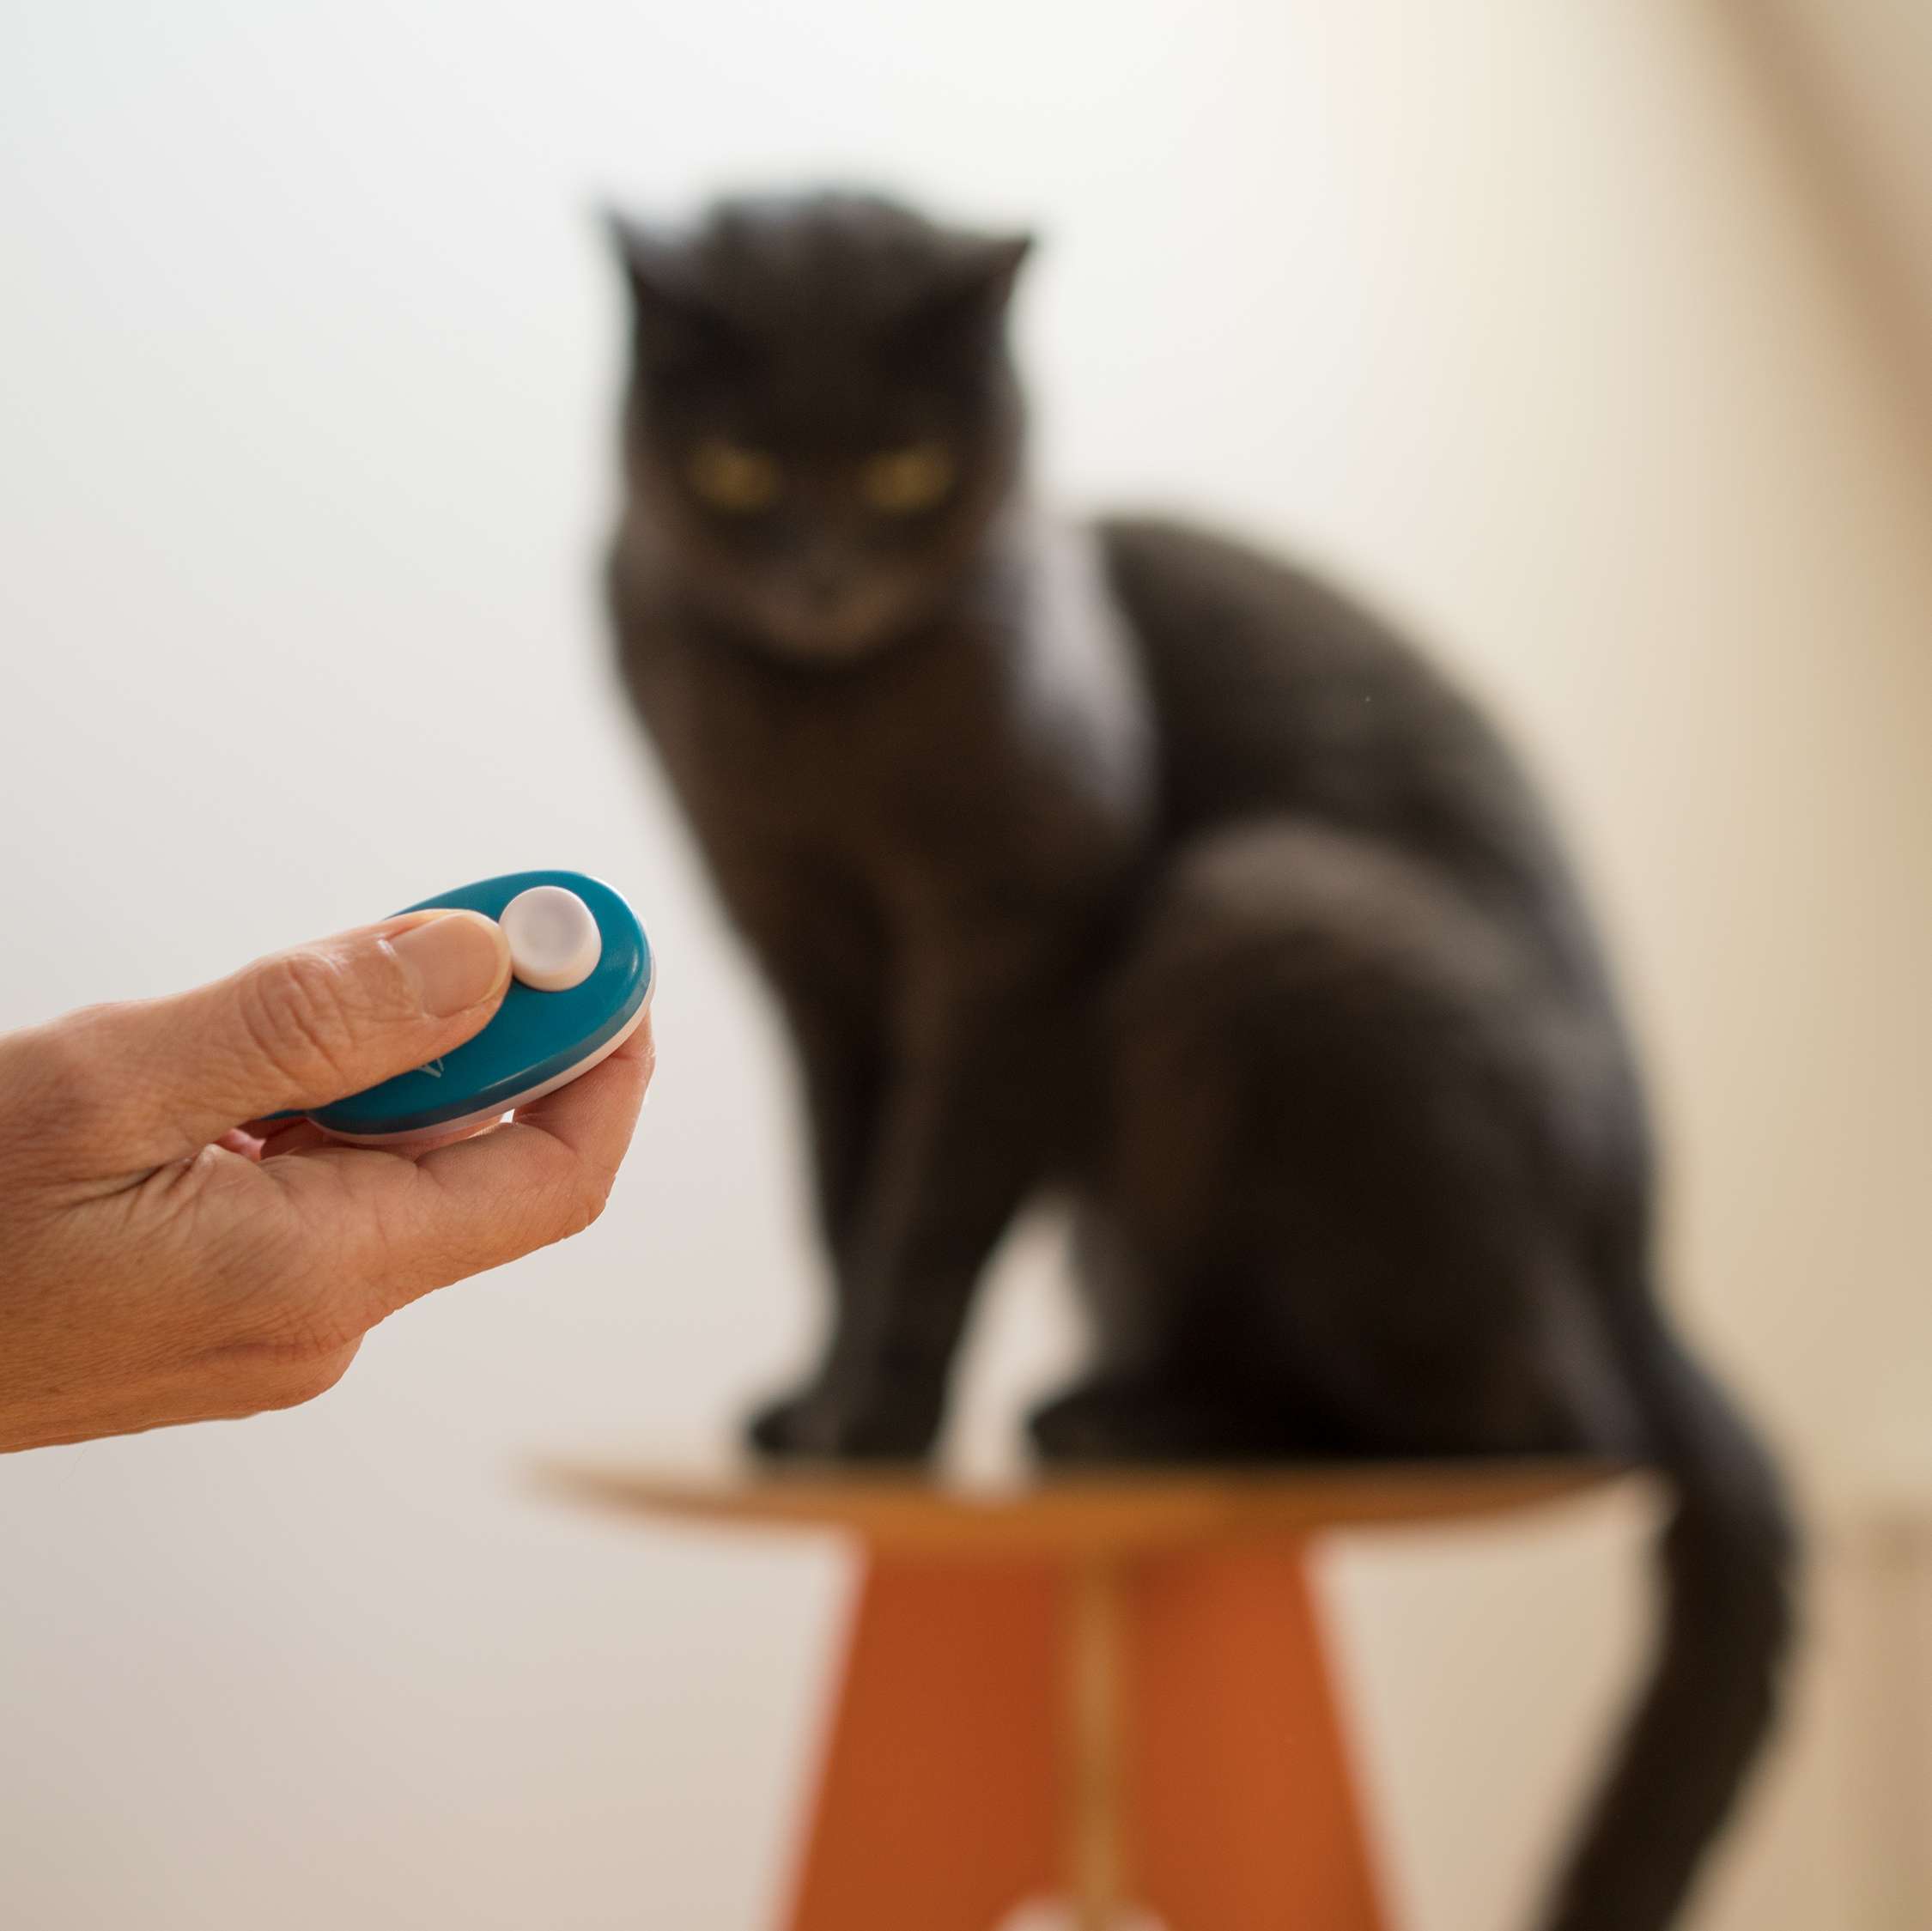 Allianz - Katze mit Clicker trainieren: Hand hält Clicker, im Hintergund eine Katze